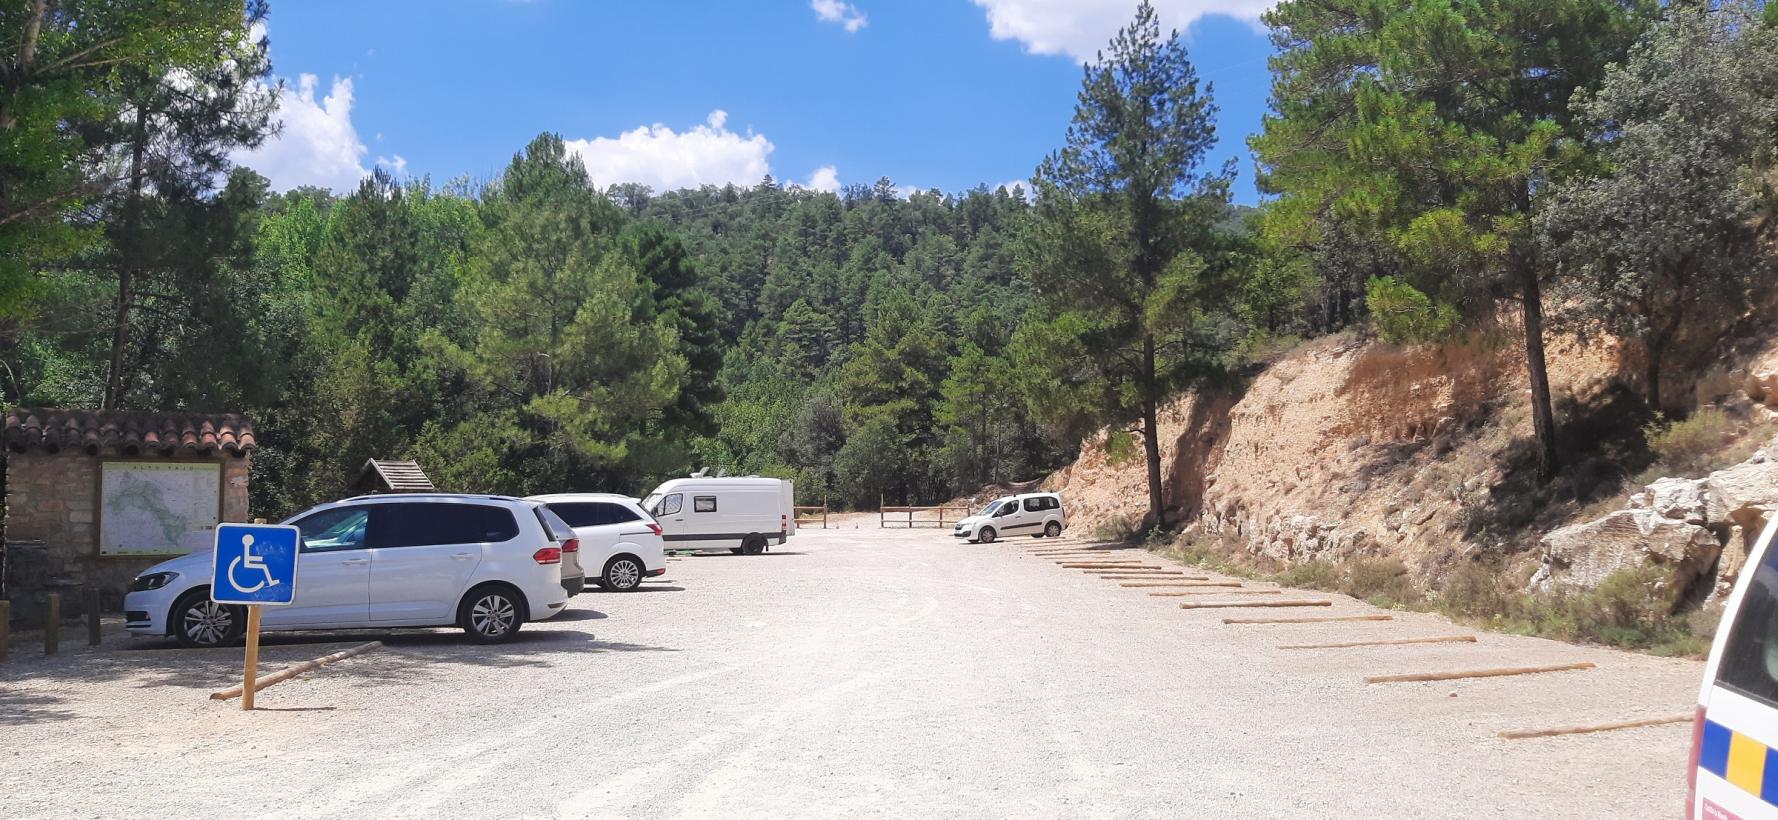 Image 1 of article Se intensifican las medidas de regulación de acceso de vehículos y vigilancia en el Parque Natural del Alto Tajo